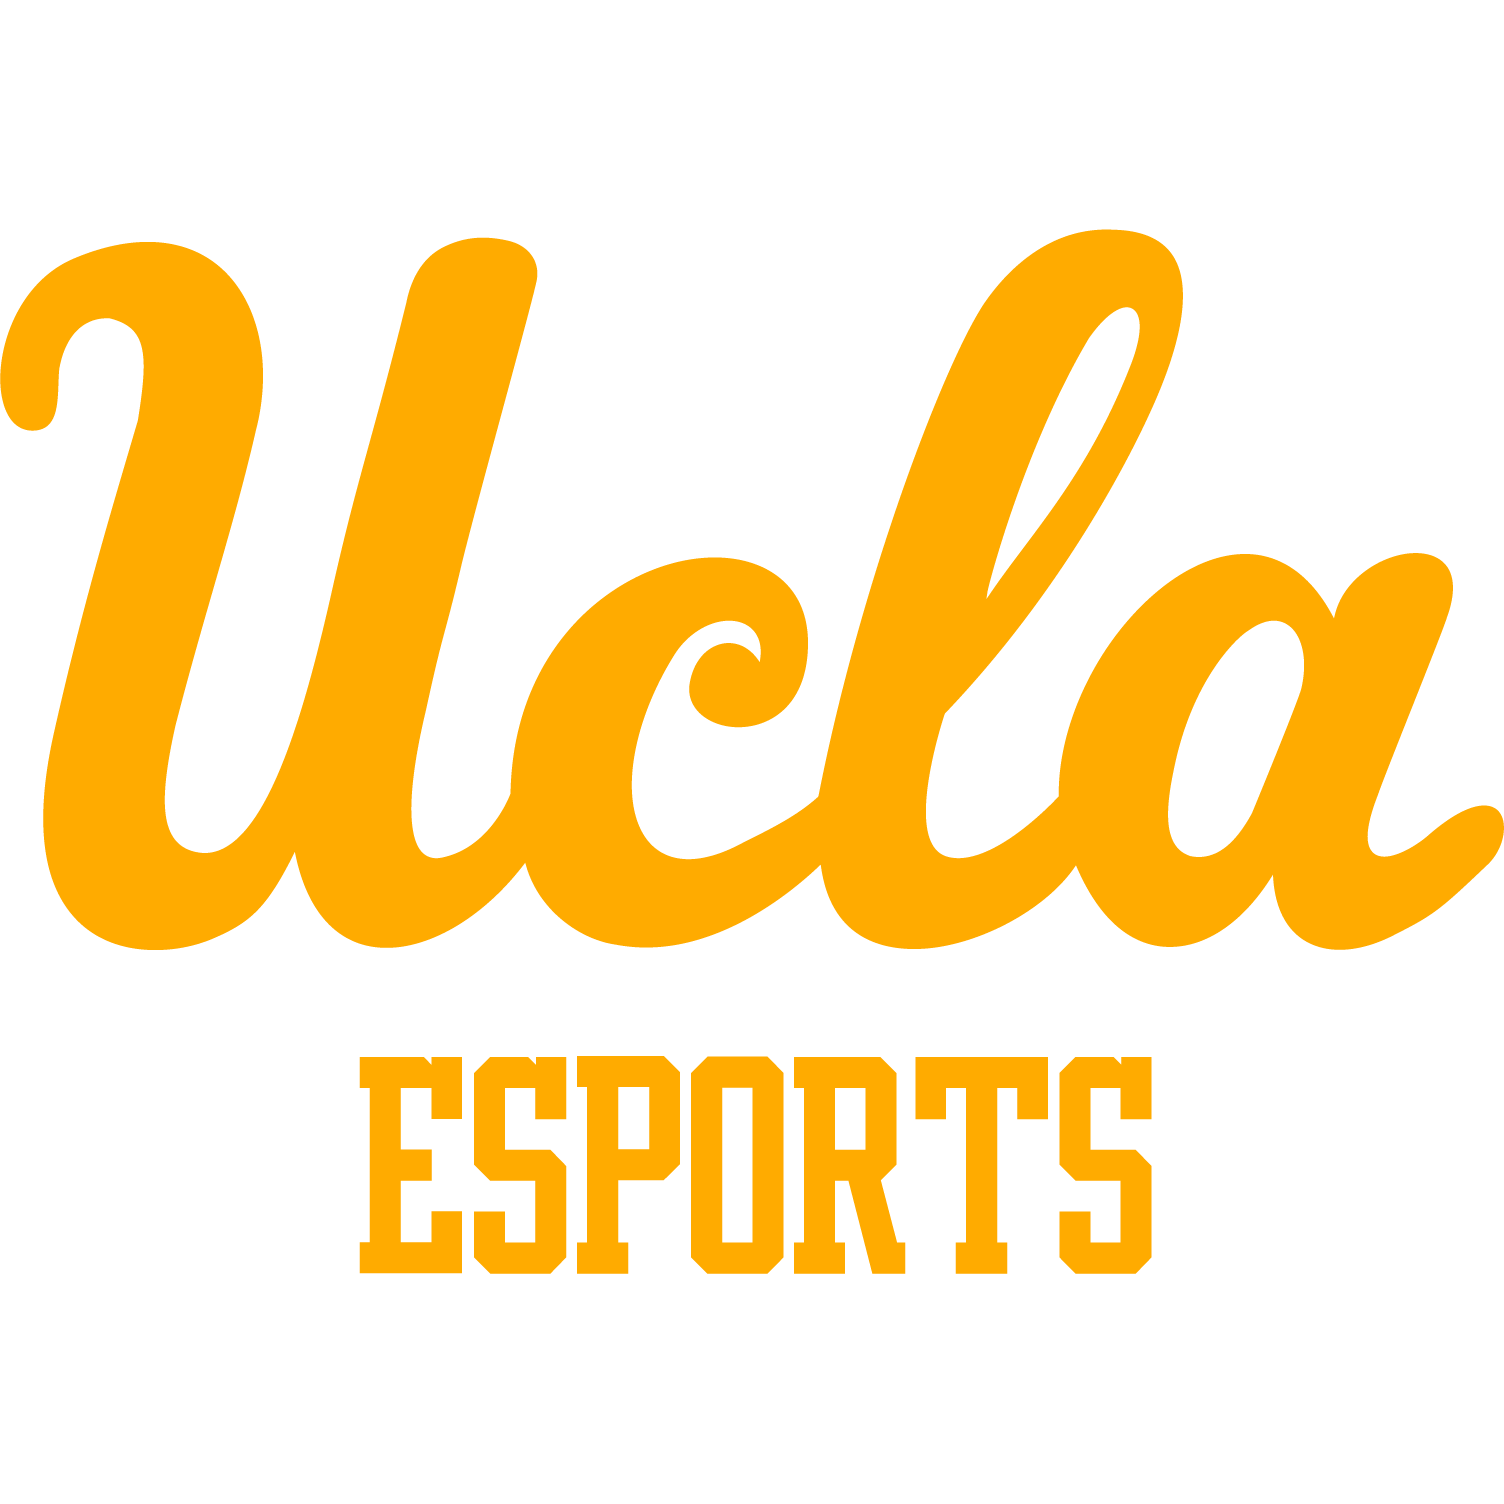 UCLA Esports Logo